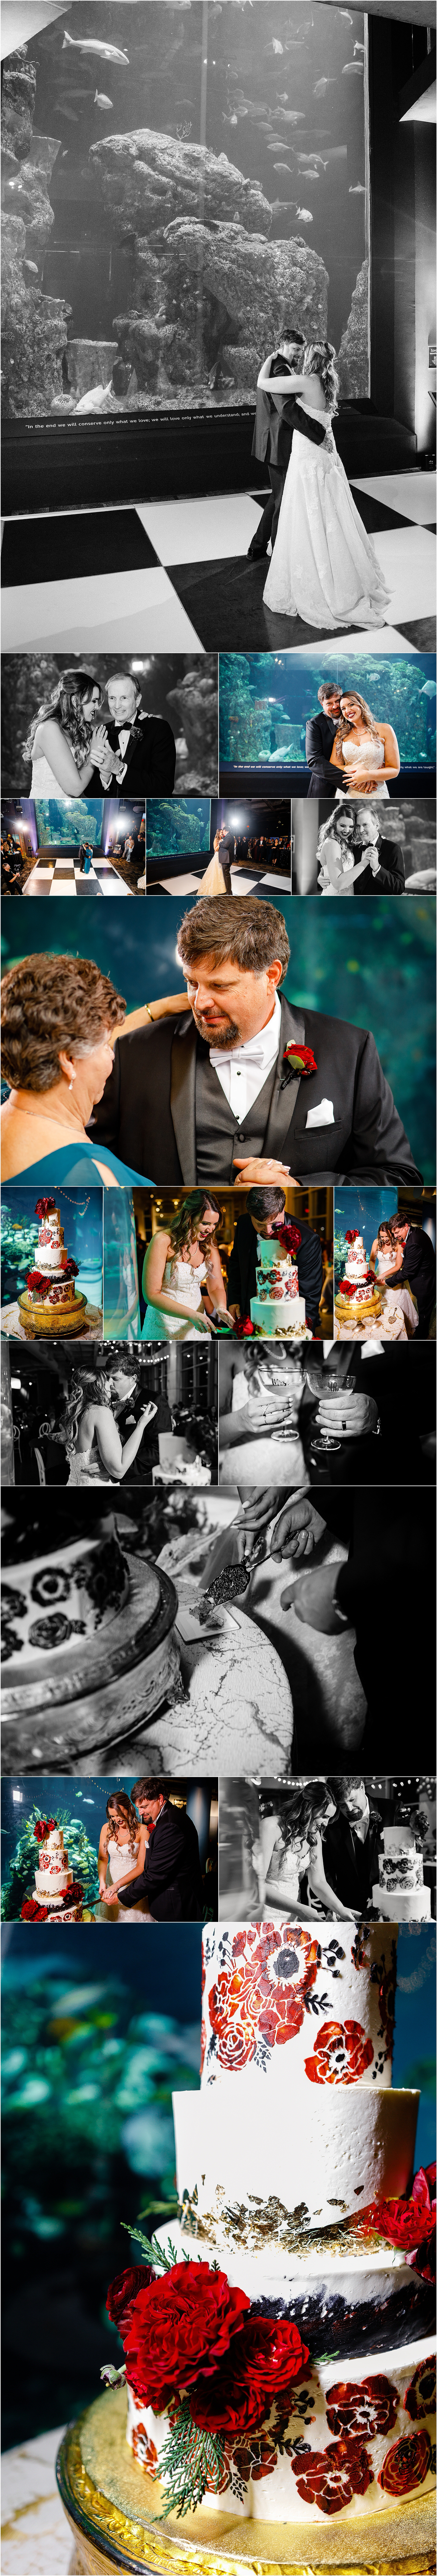 A Winter Wedding at the SC Aquarium, SC Aquarium Wedding, Aquarium Wedding, Cory Lee Photography, Charleston Photographer, Charleston Wedding Photographers